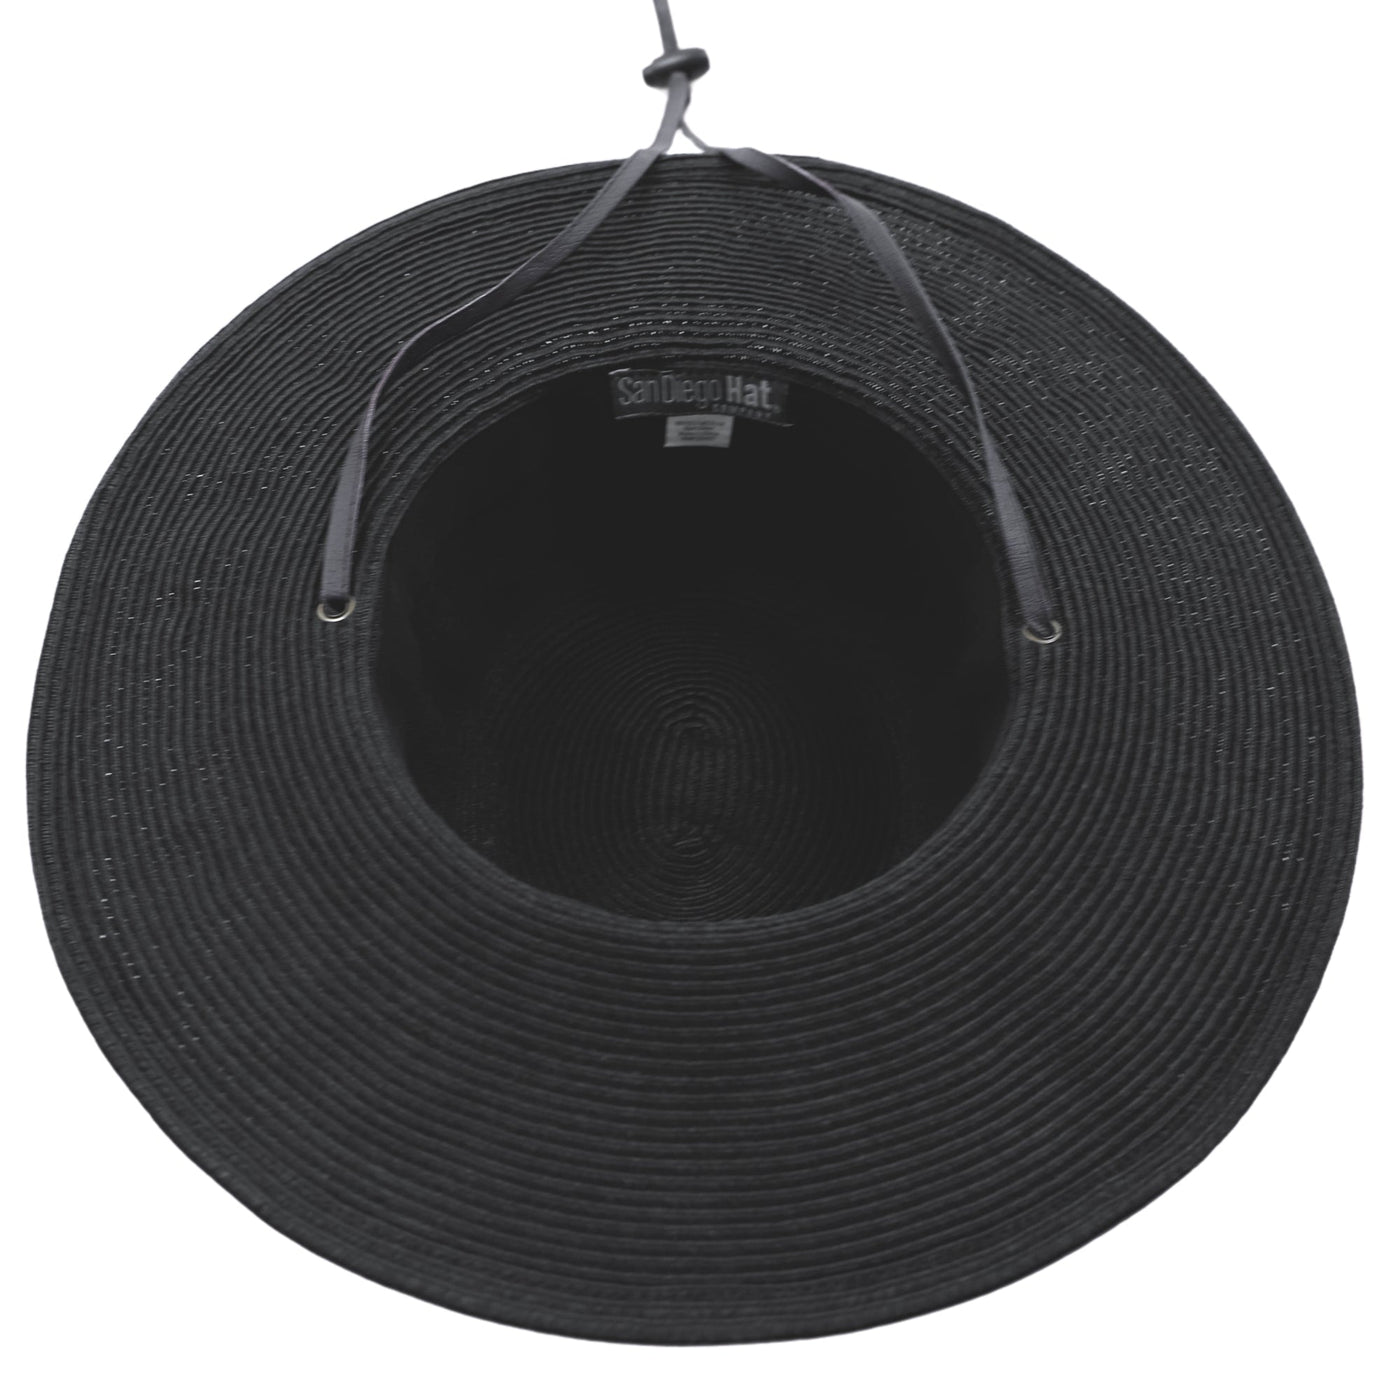 FLOPPY - Beacon - The Perfect Wide Brim Garden Hat